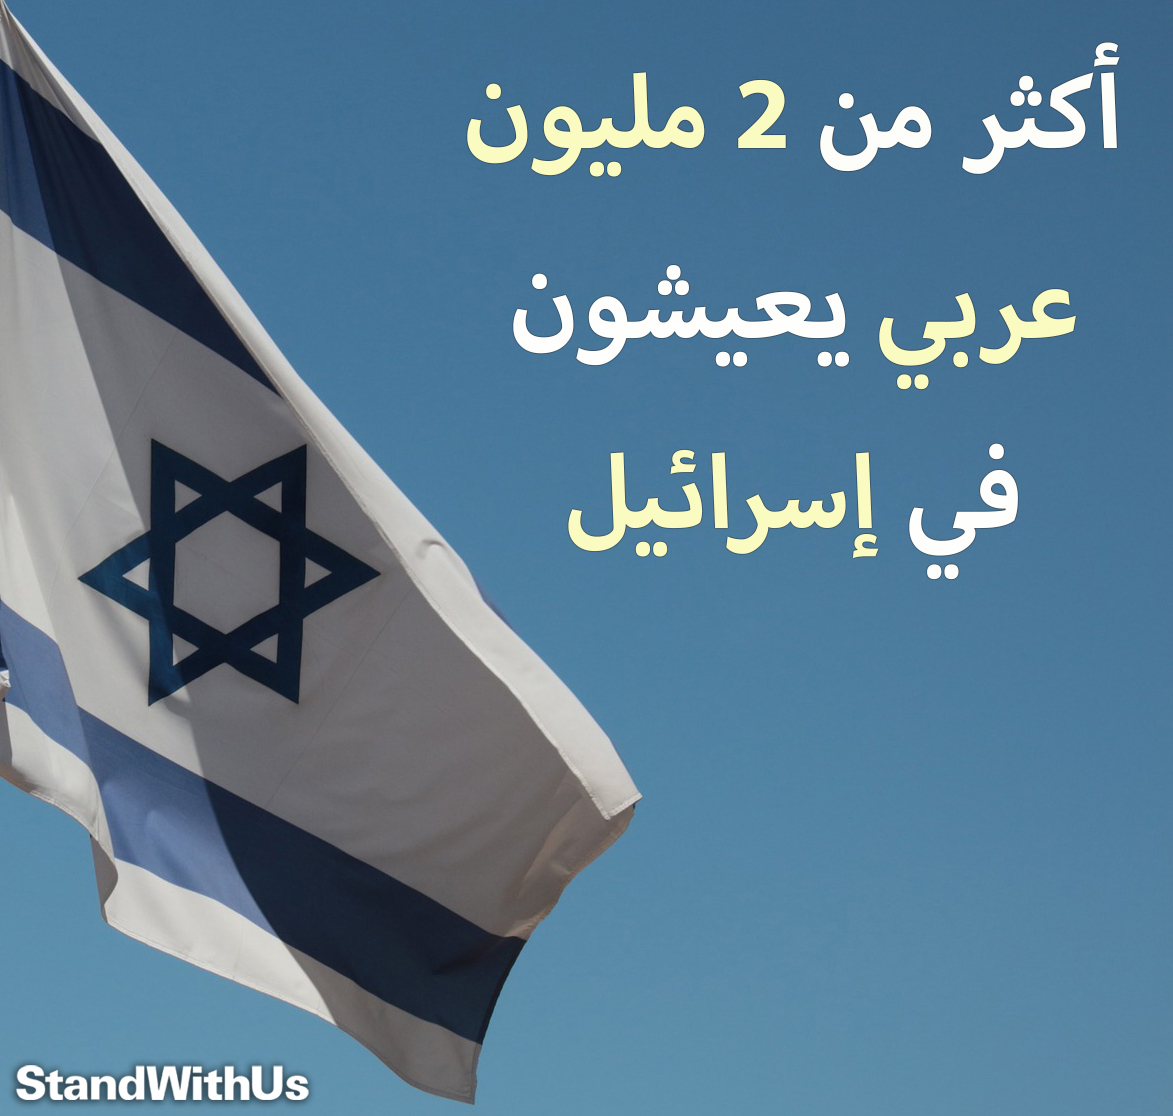 من بين 9.5 مليون نسمة تعداد سكان دولة إسرائيل هناك أكثر من 2 مليون عربي.. هذه هي إسرائيل  …